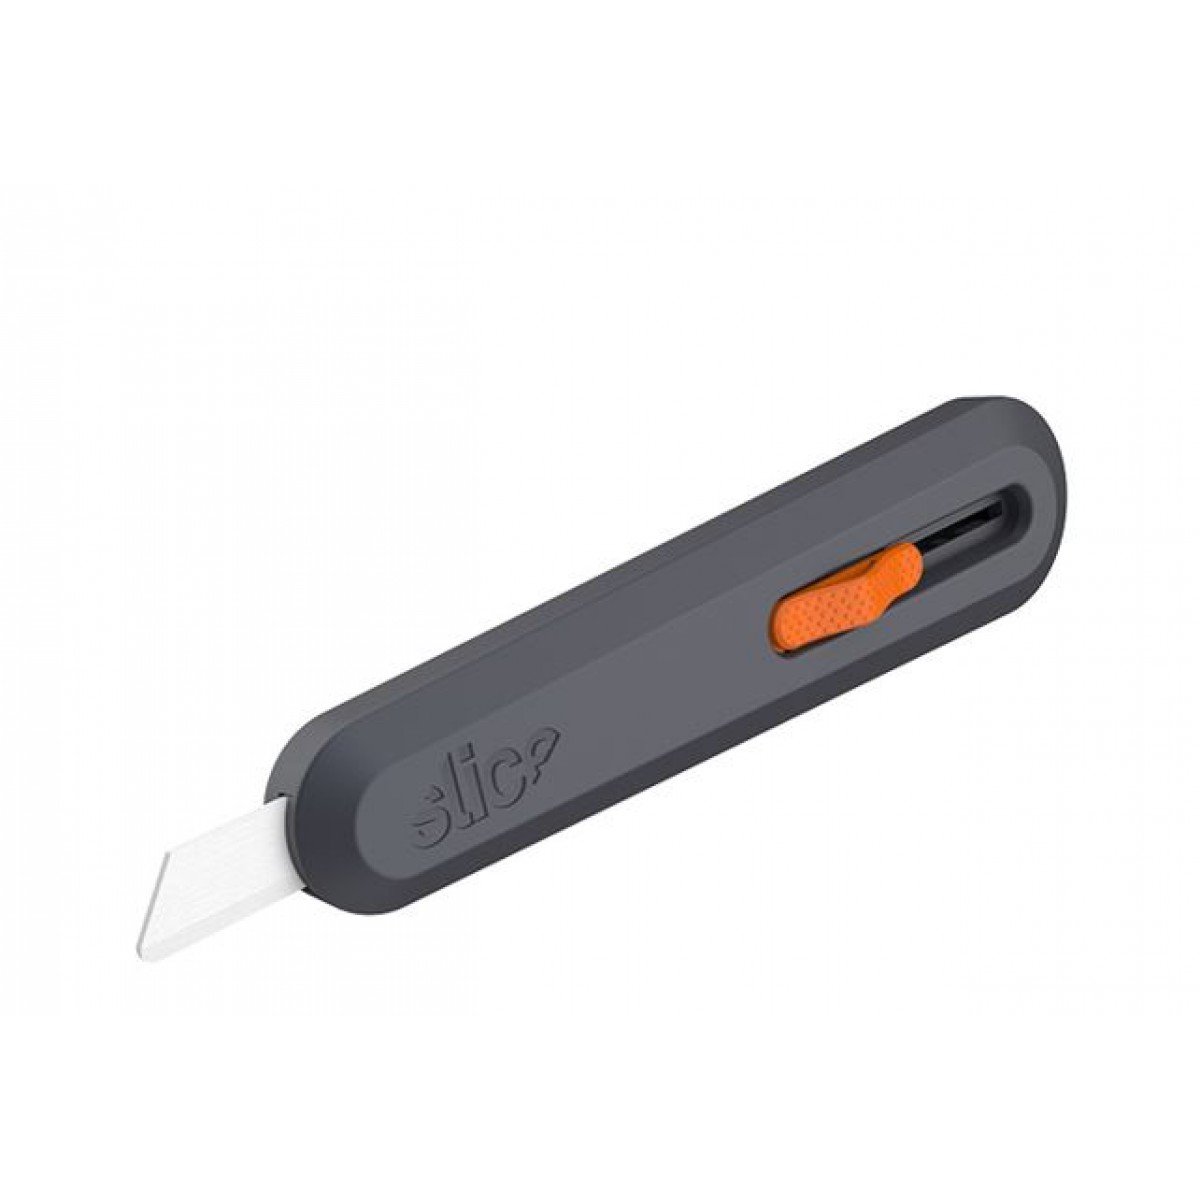 Manual Slice Utility Knife - Ceramic Blade